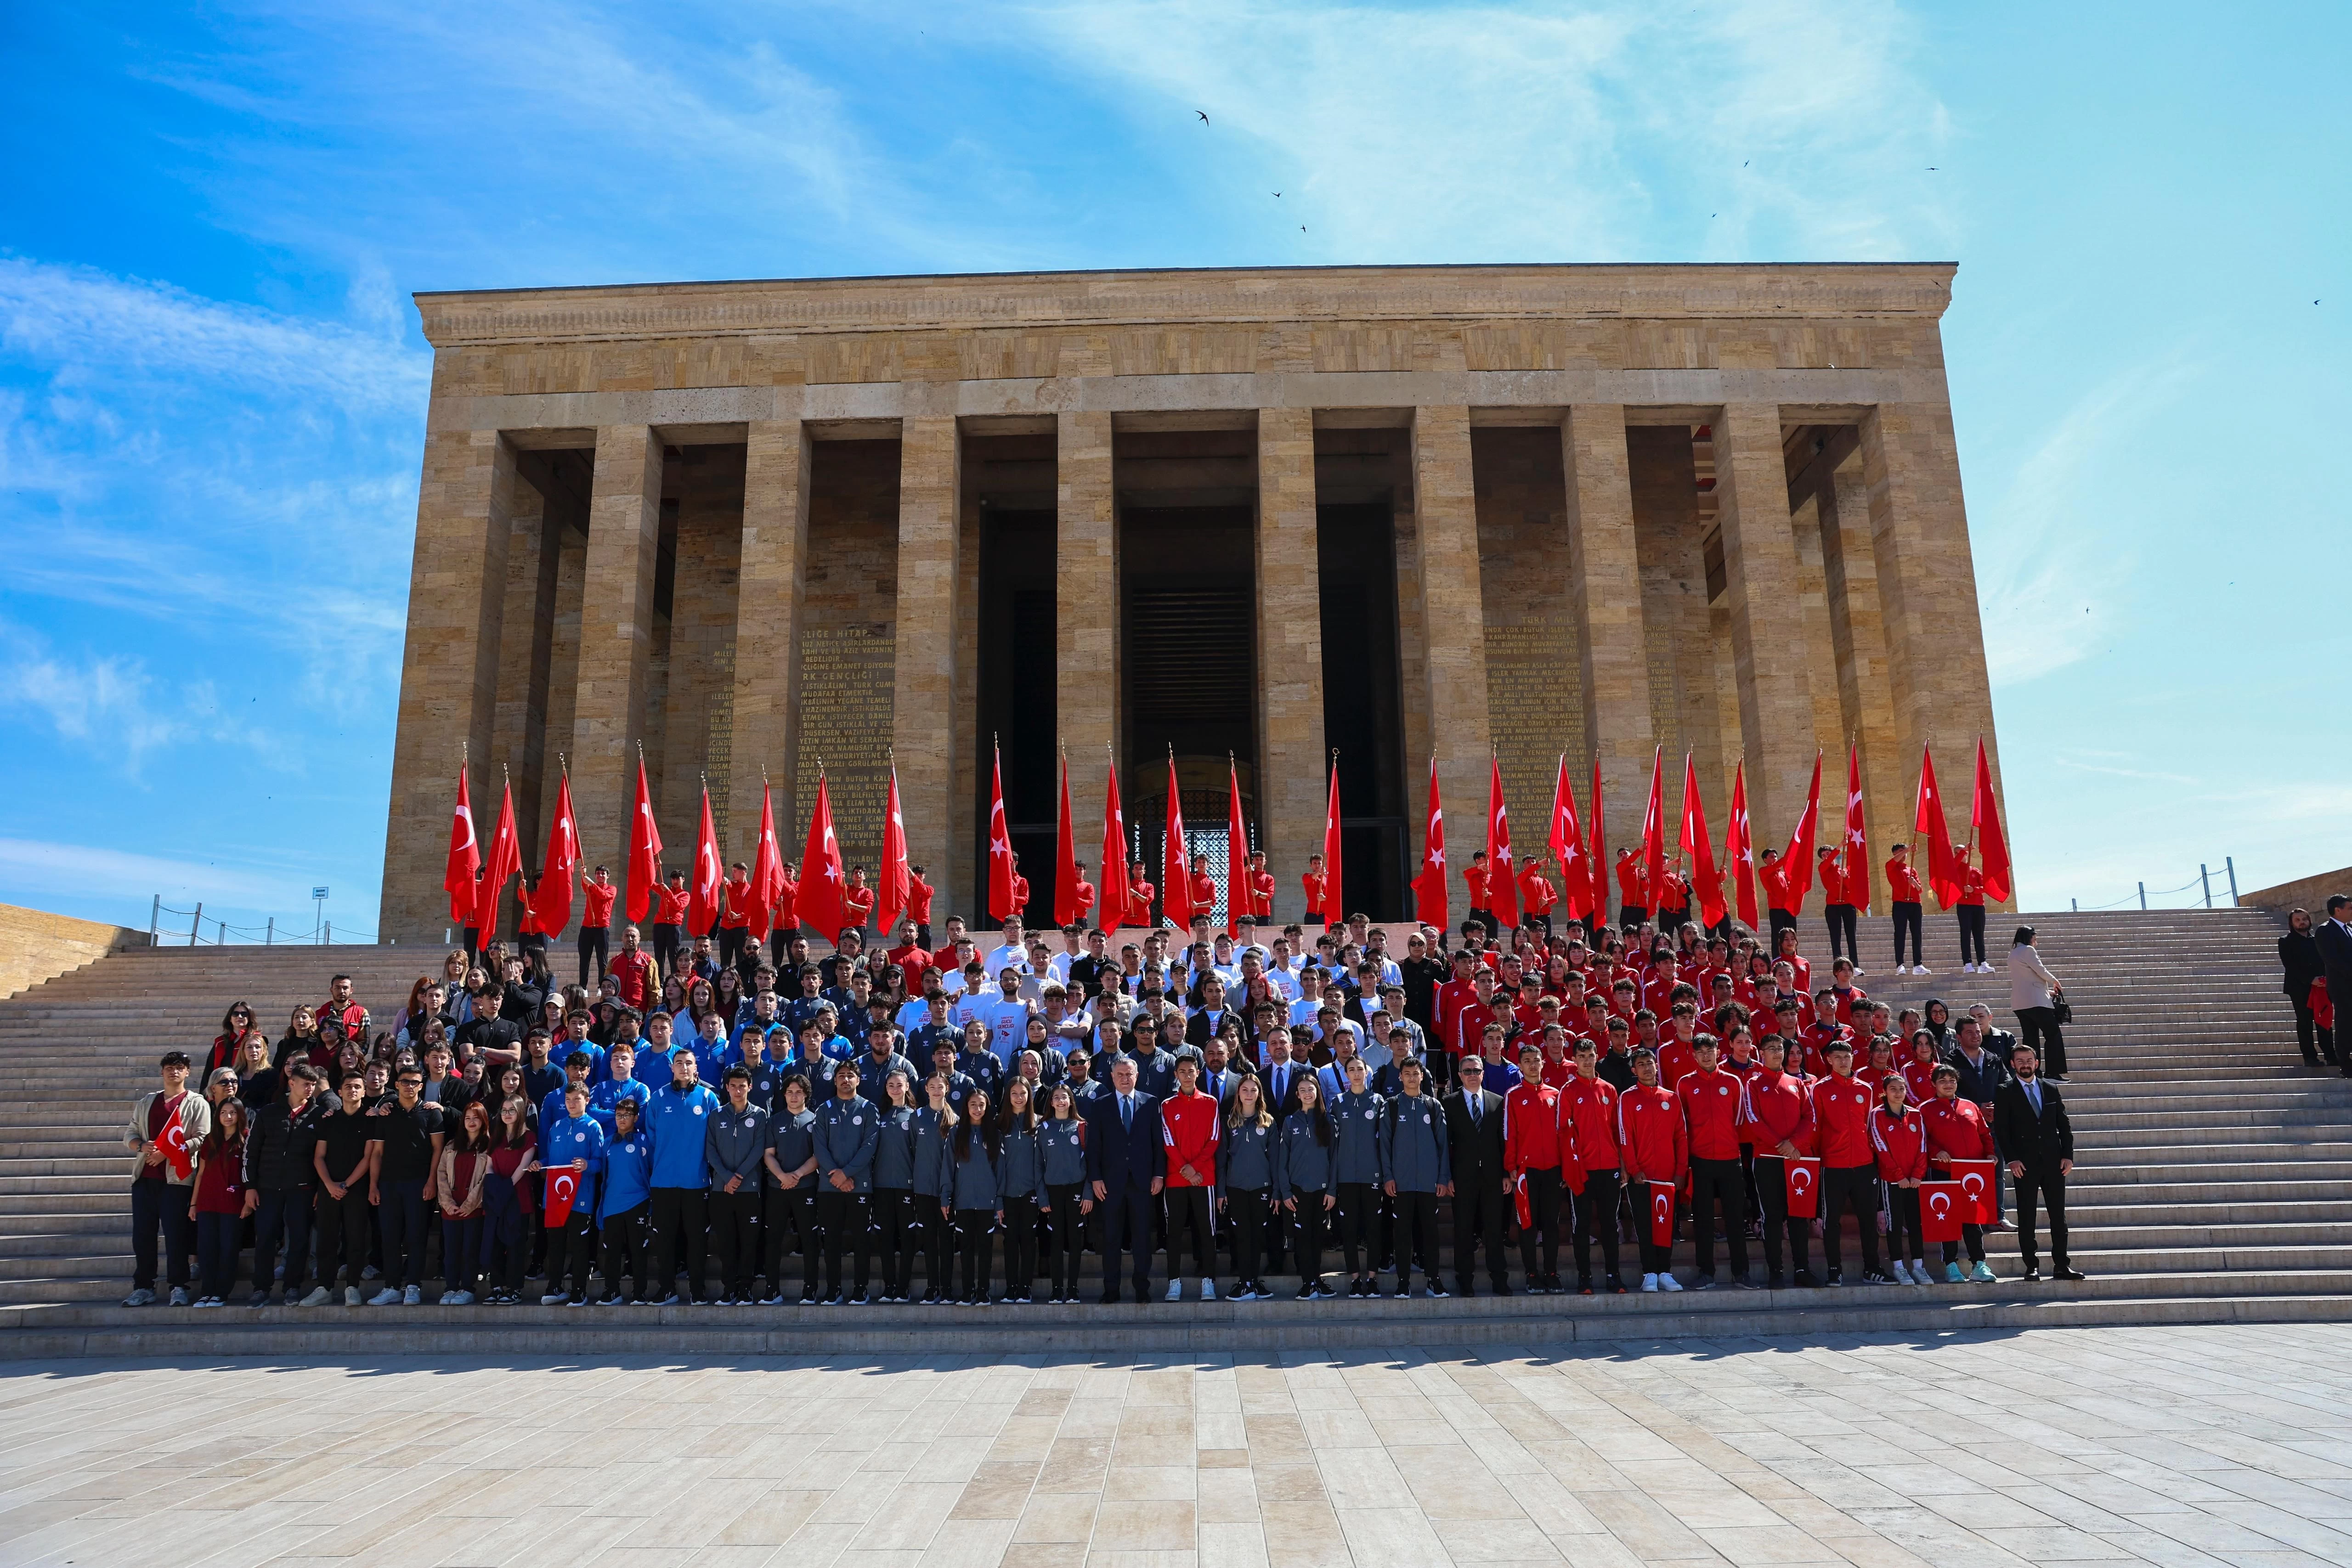 Gençlik ve Spor Bakanı Osman Aşkın Bak'tan Anıtkabir'e ziyaret